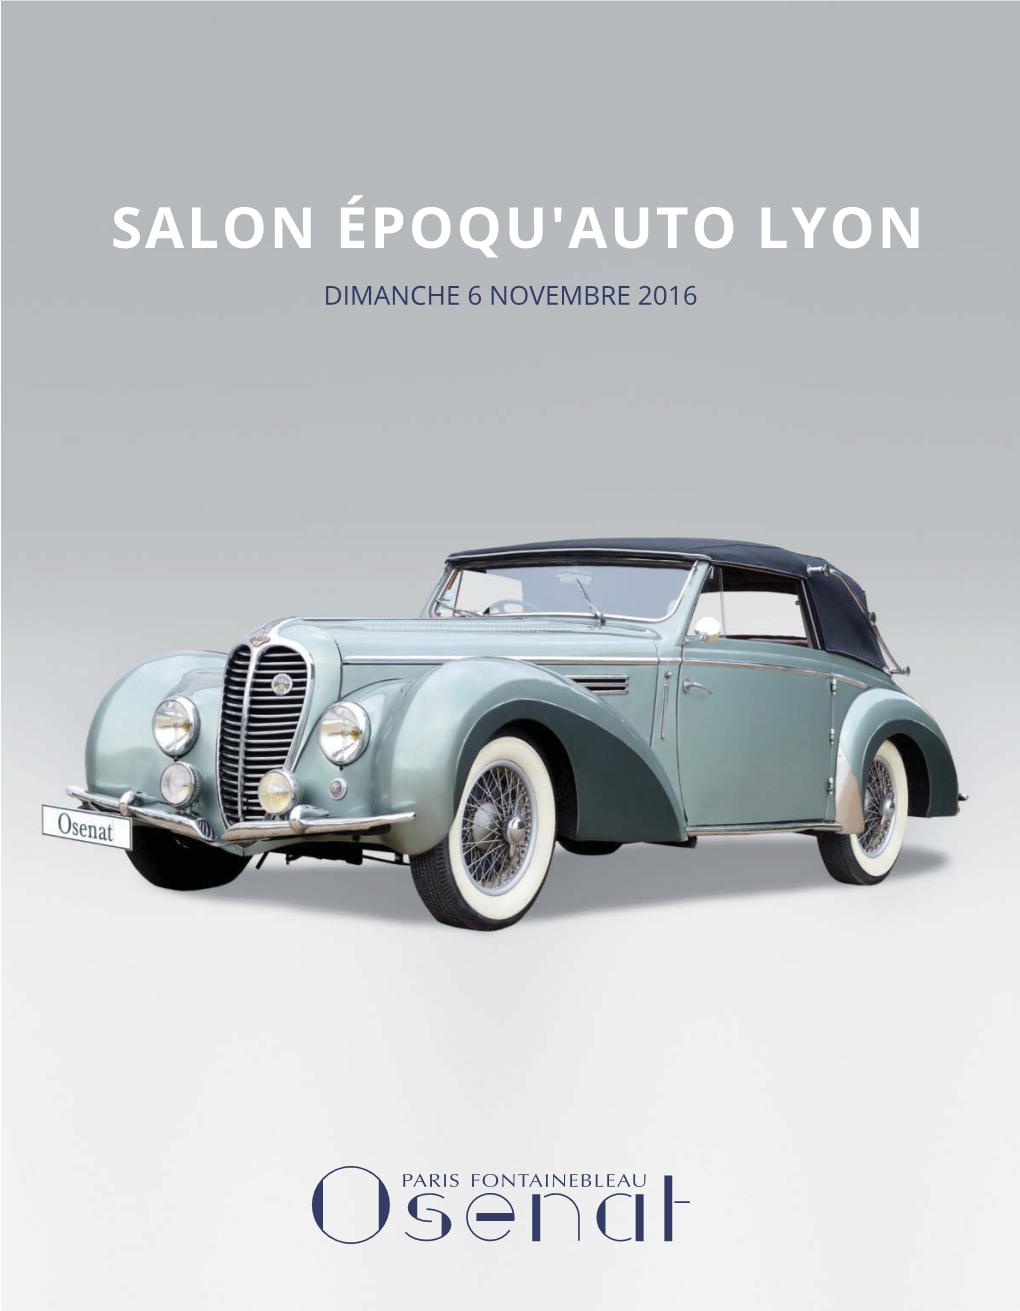 Salon Époqu'auto Lyon Dimanche 6 Novembre 2016